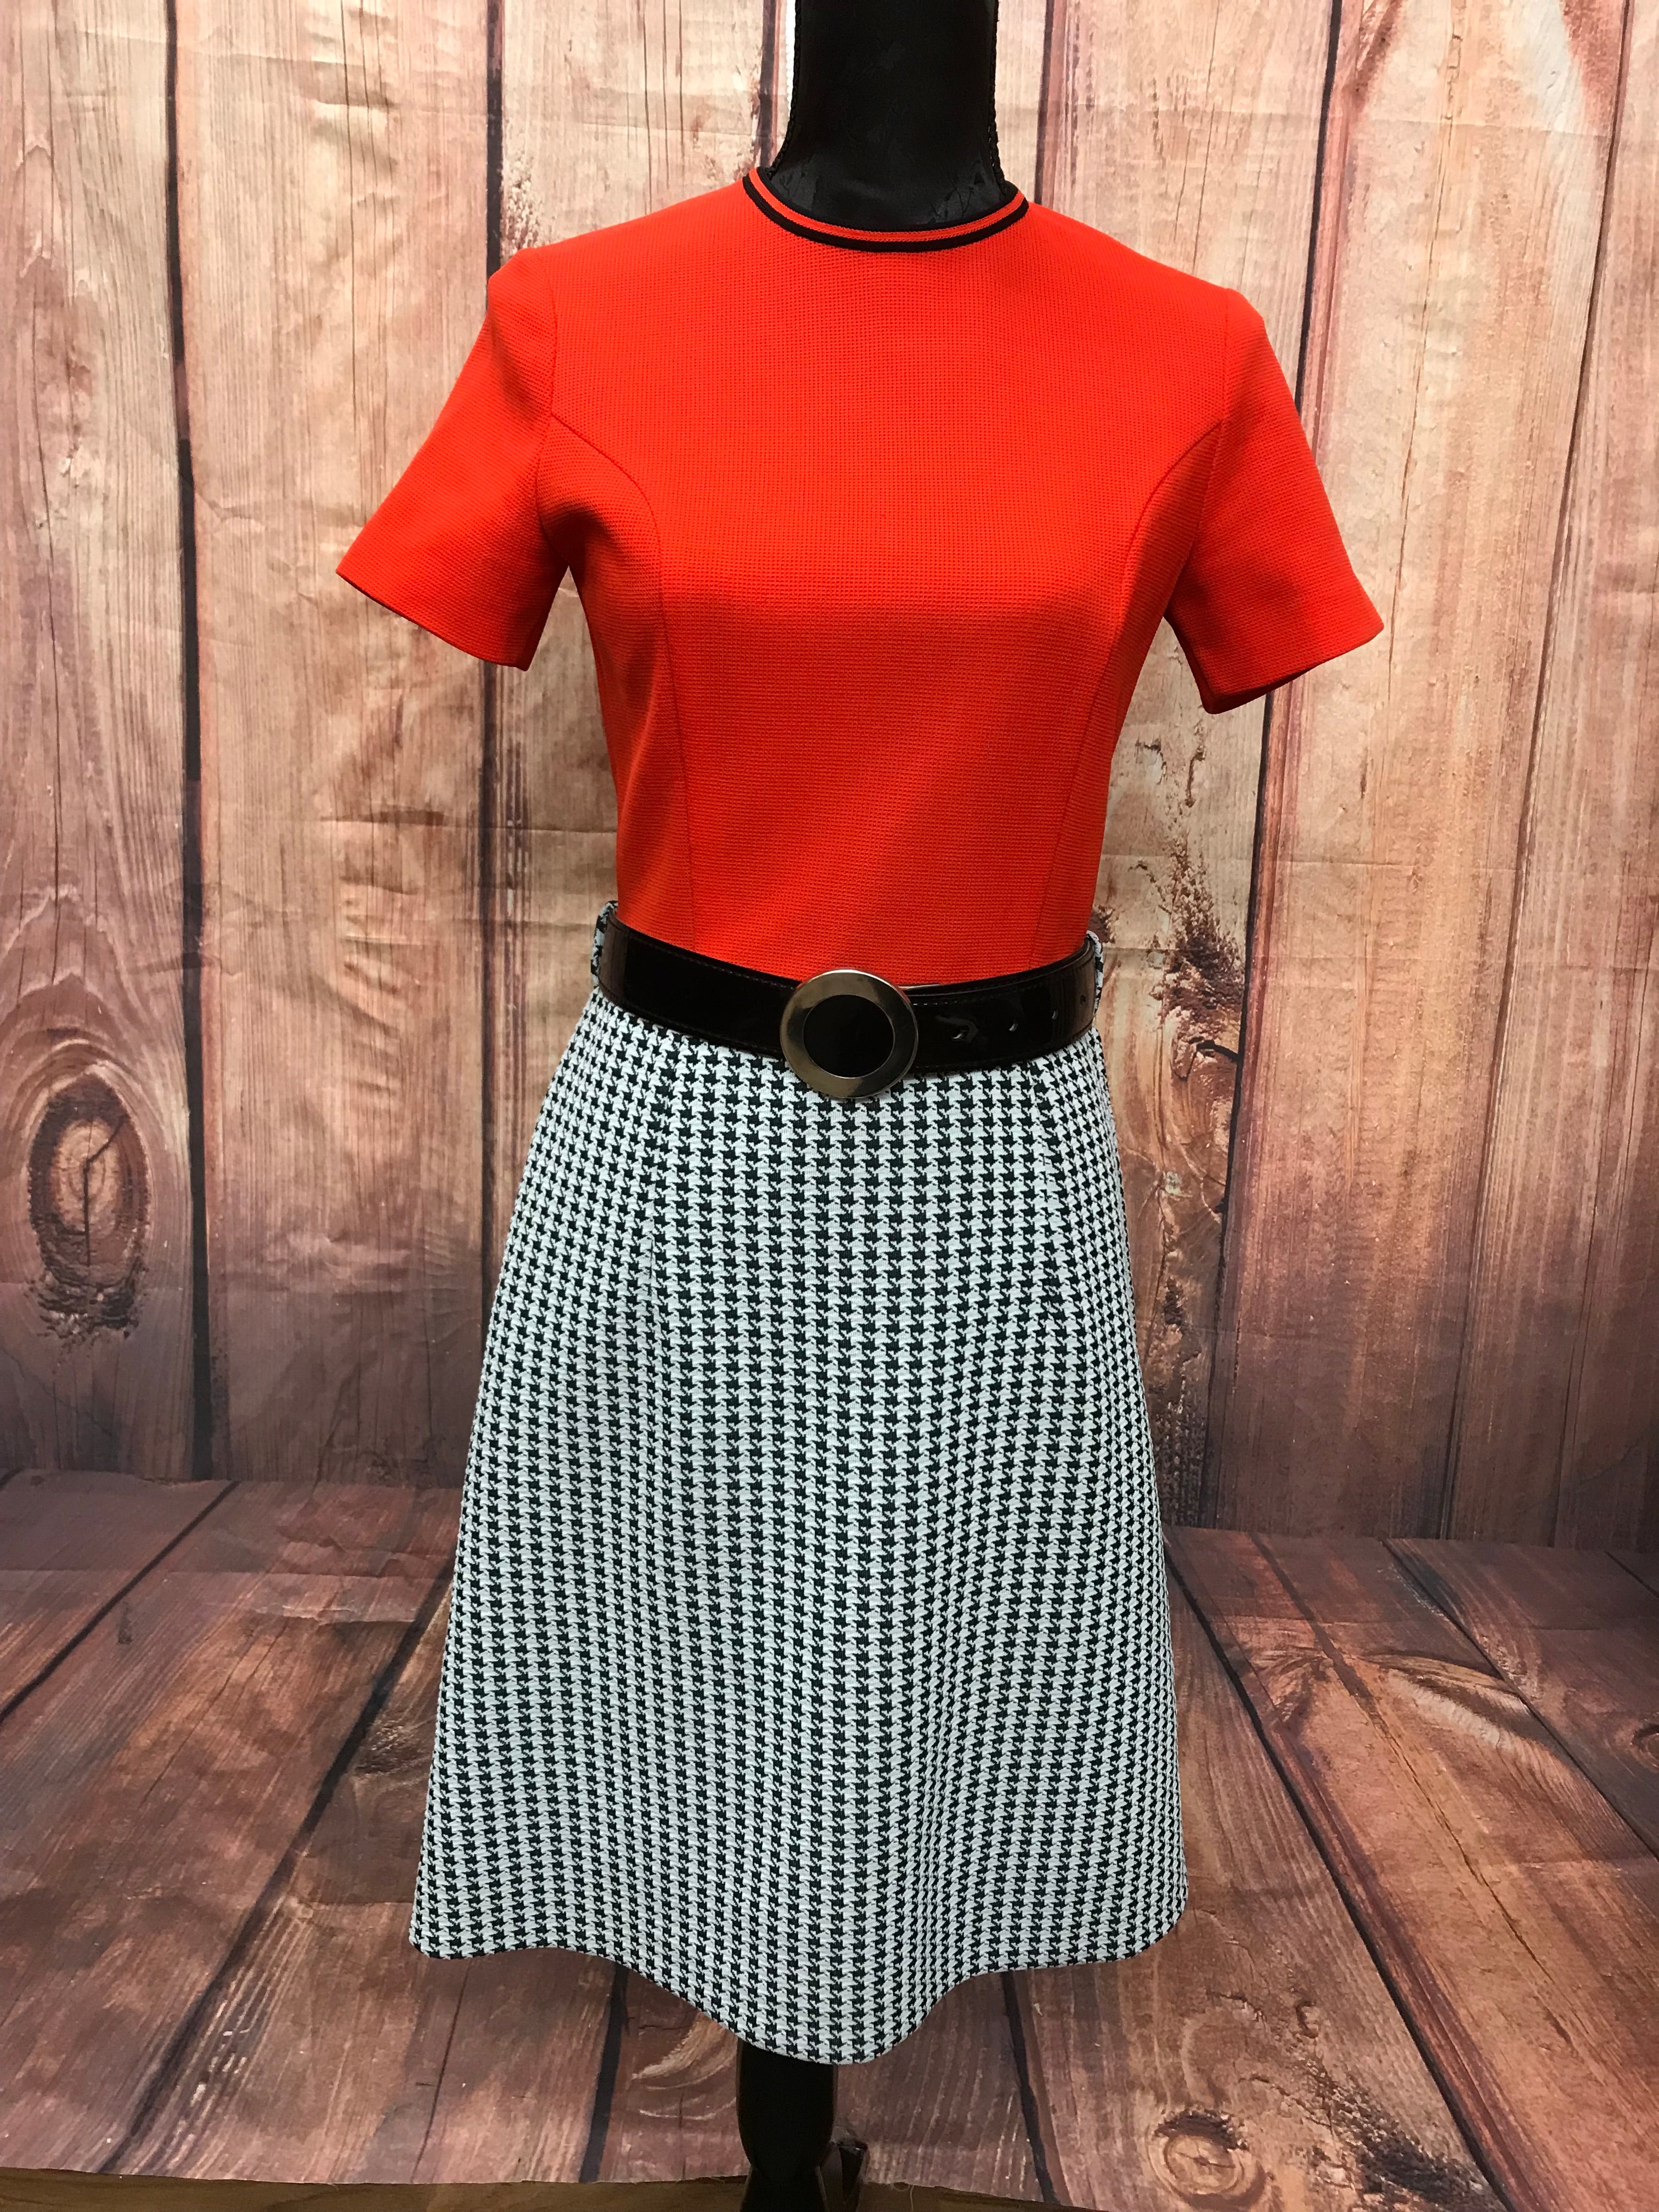 Vintage Damen Kostüm, Kleid mit Blazer, Pepita Muster rot schwarz weiß Gr.38